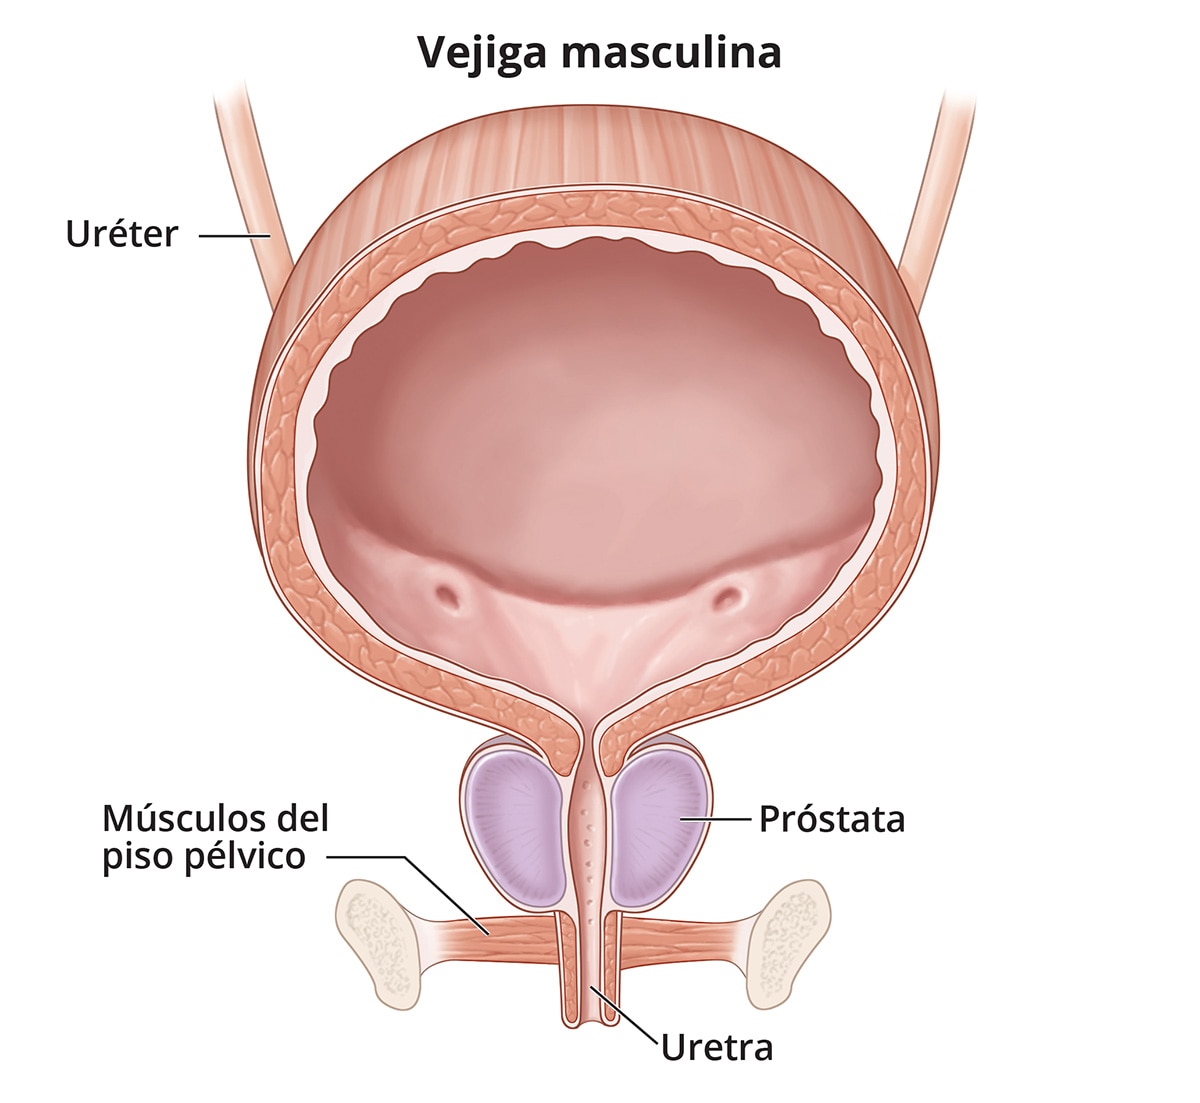 Ilustración de las vías urinarias masculinas (vejiga, uréteres, músculos del piso pélvico y uretra), y mostrando la próstata. 